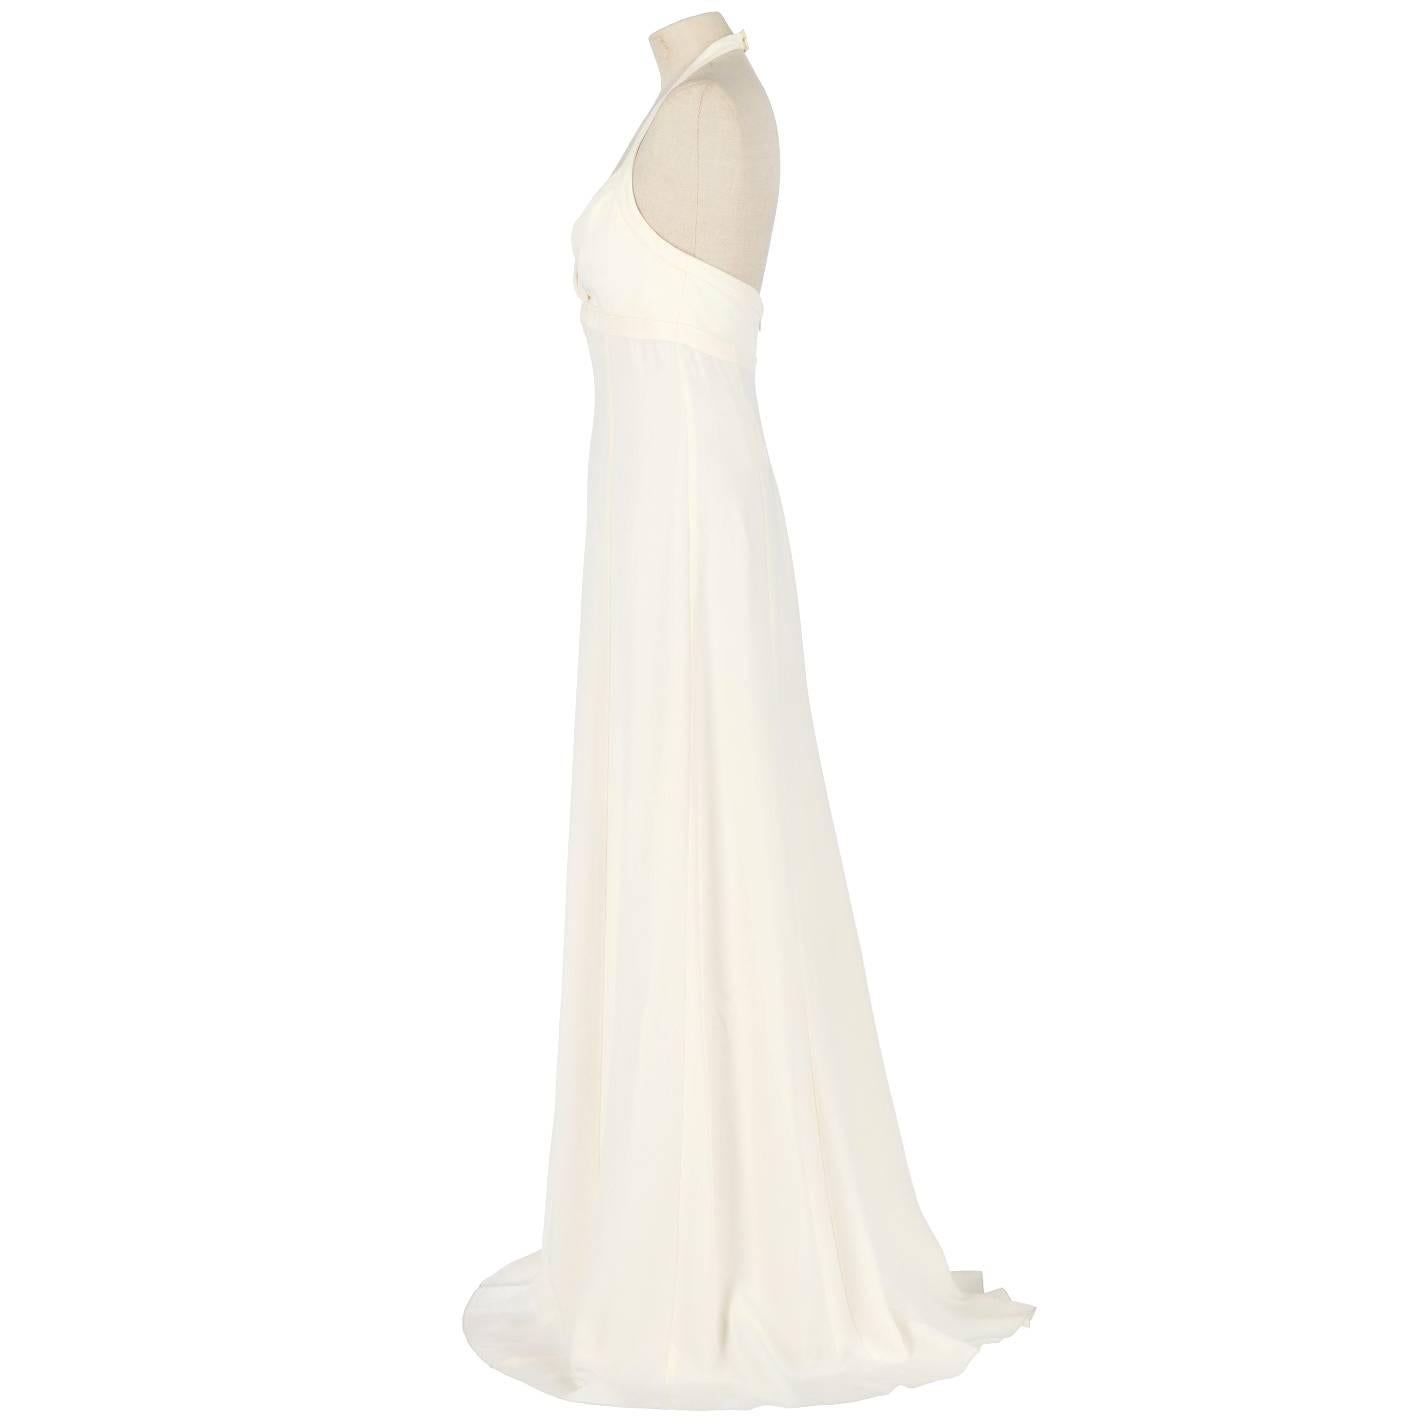 A.N.G.E.L.O. Vintage By - Italien

Wunderschönes Hochzeitskleid von Armani aus Seide und Acetat in elfenbeinweißer Farbe. Es hat einen V-Ausschnitt, Schulterriemen, die im Nacken befestigt werden, und ist rückenfrei. Reißverschluss auf der